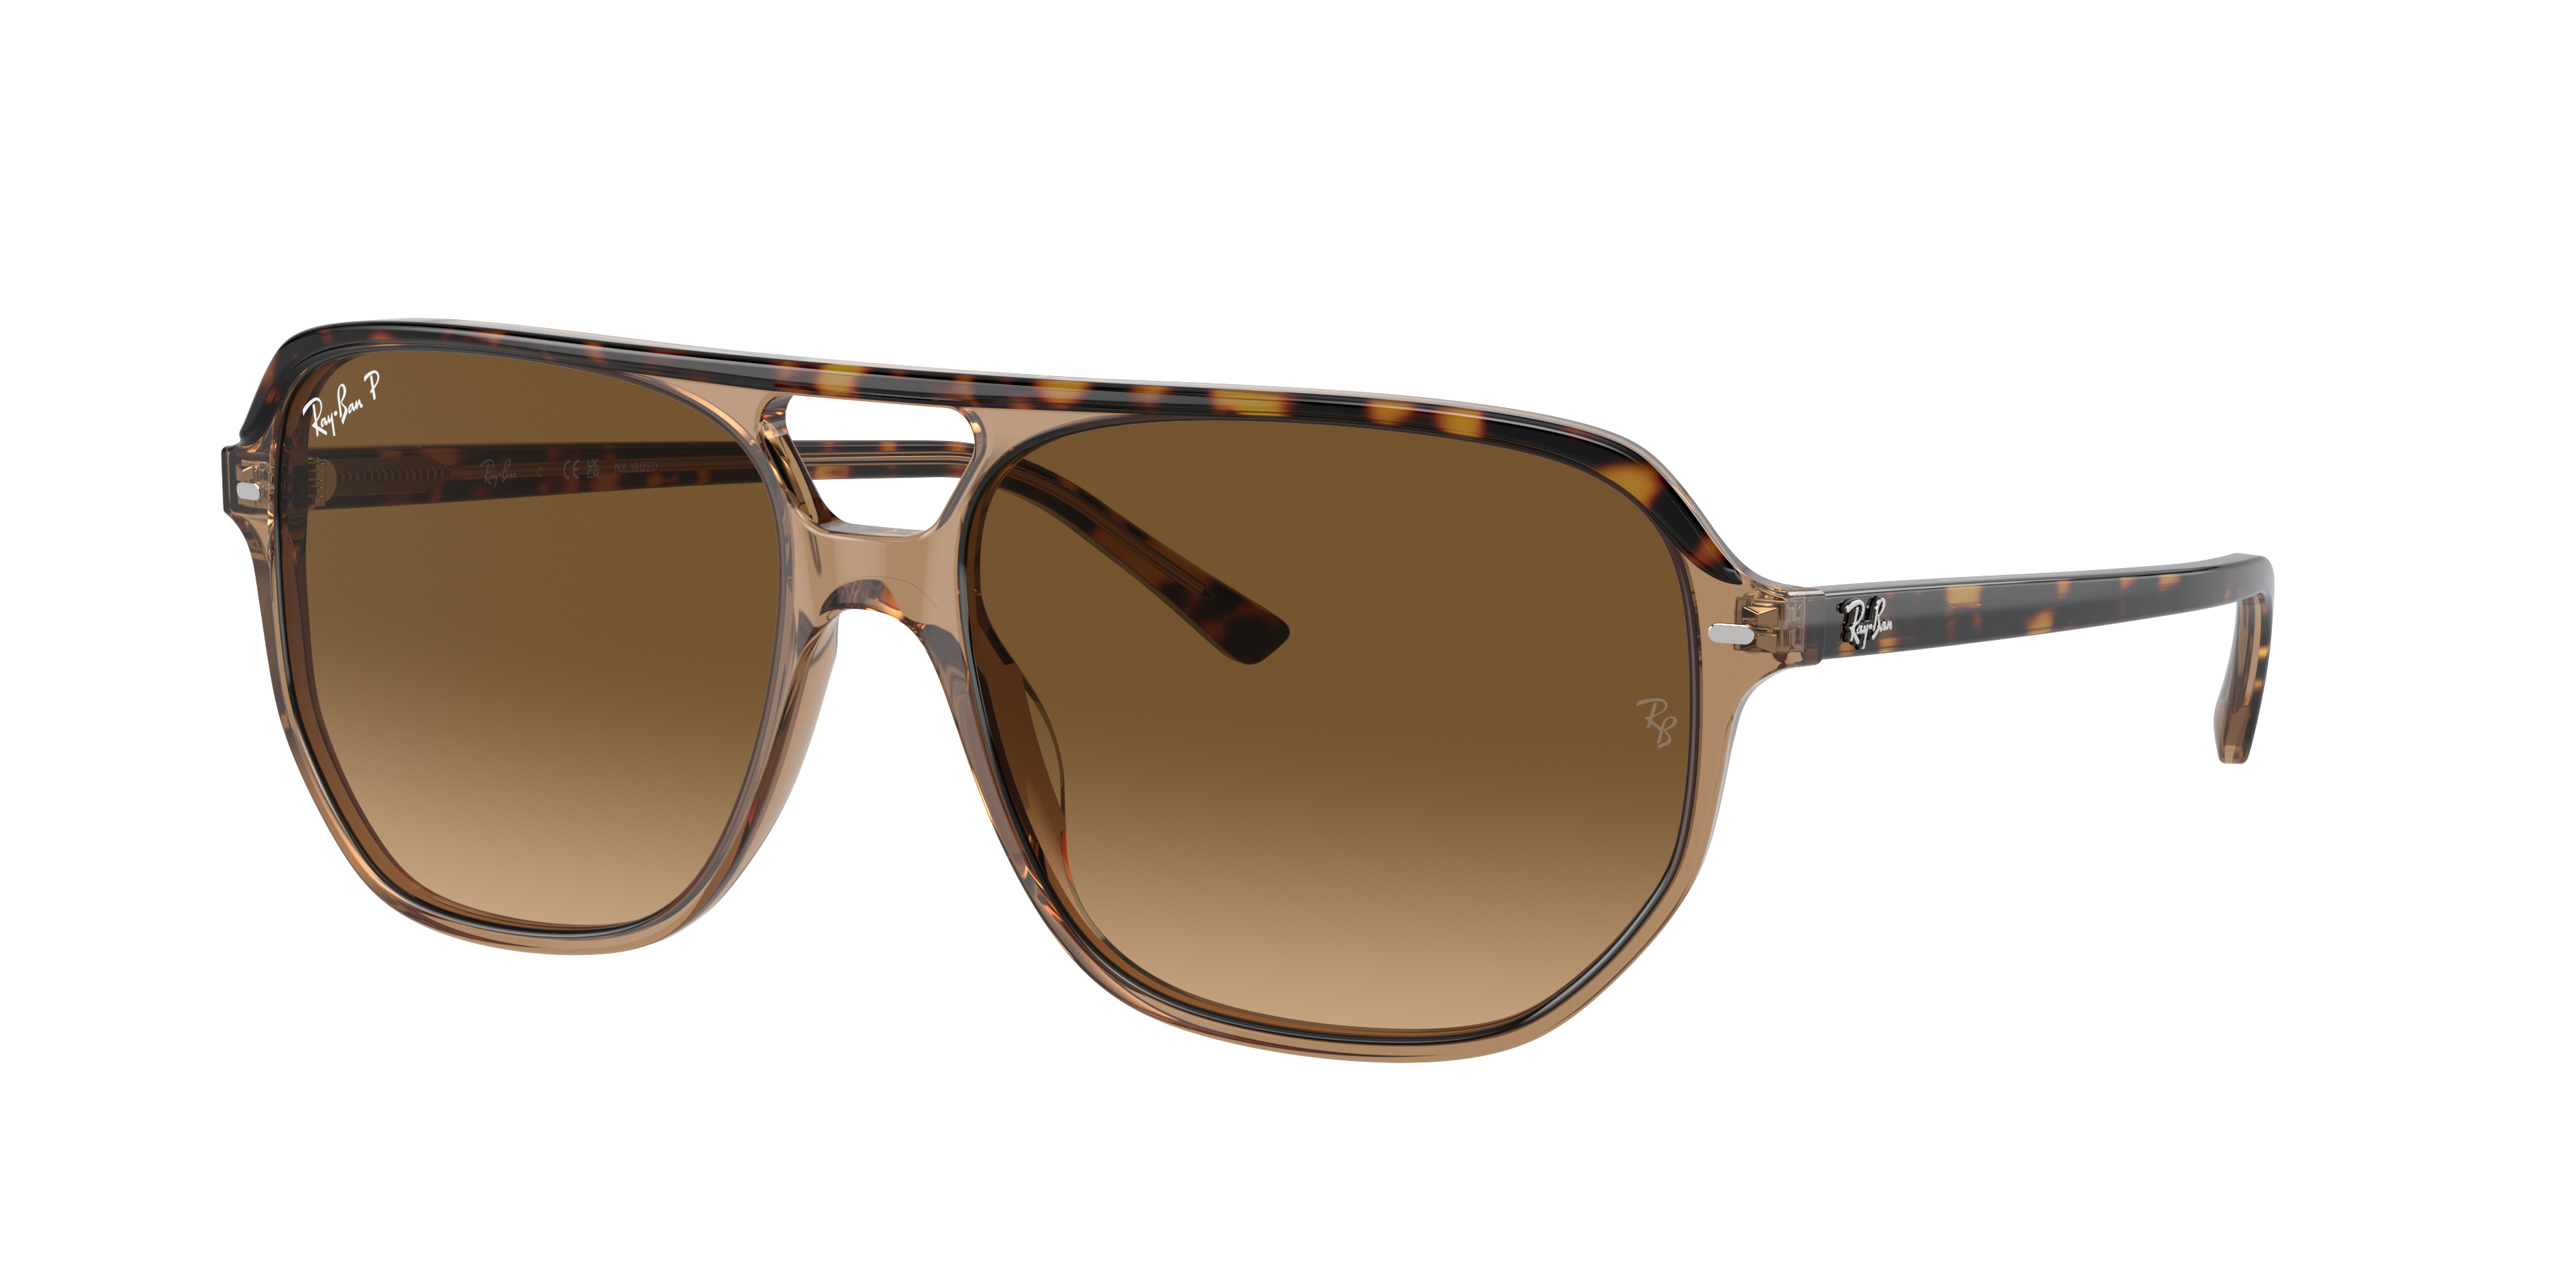 CORRIGAN BIO-BASED Sunglasses in Transparent Brown and Dark Green